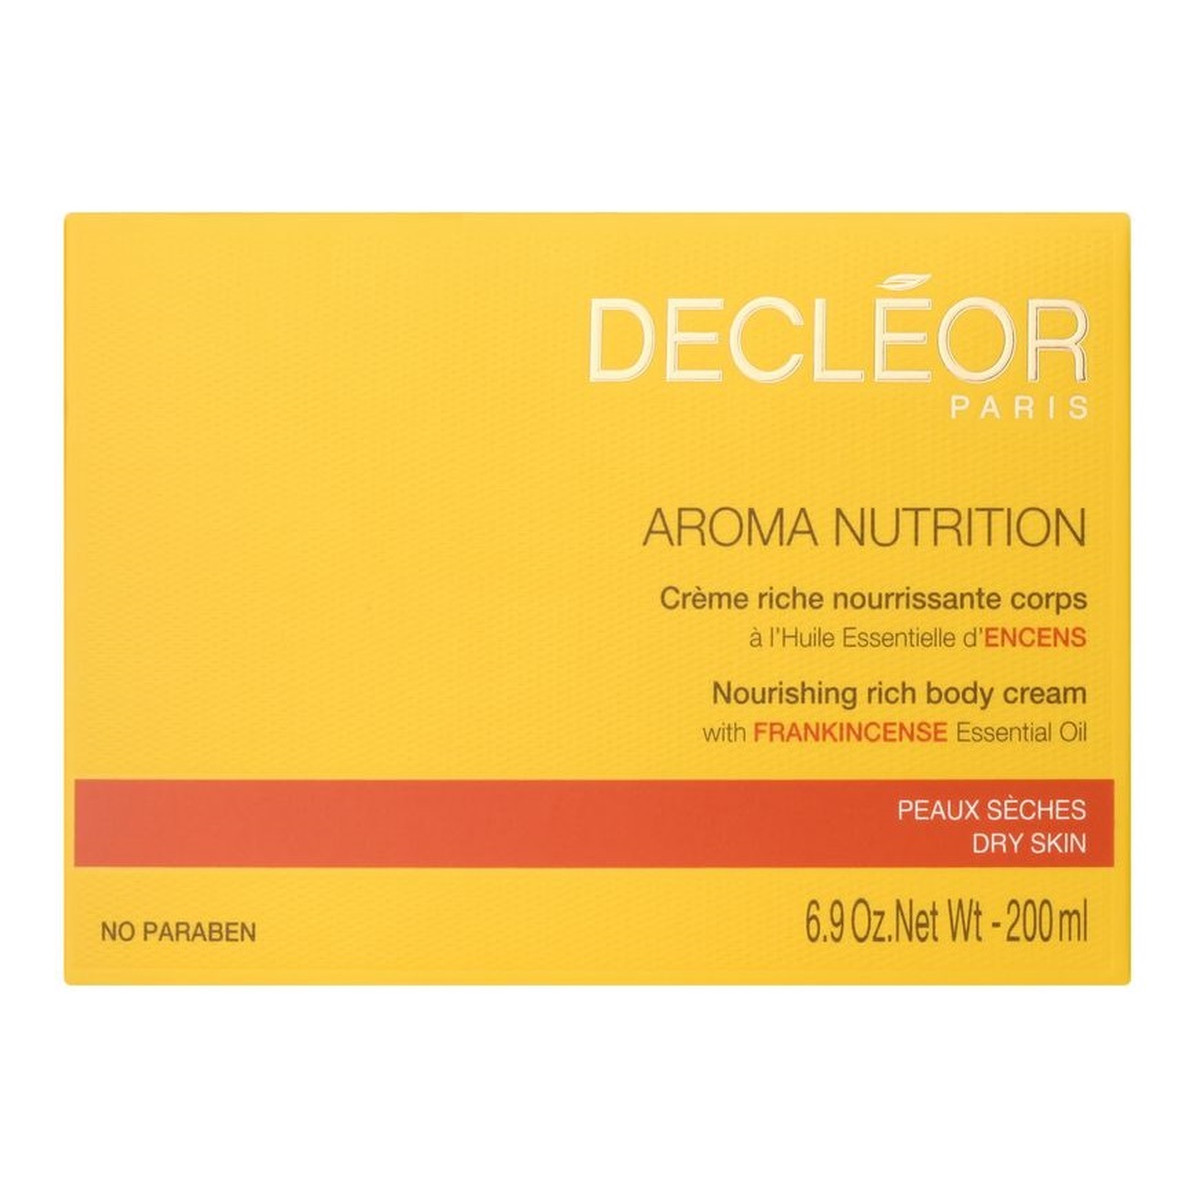 Decleor Aroma Nutrition odżywczy Krem do ciała 200ml